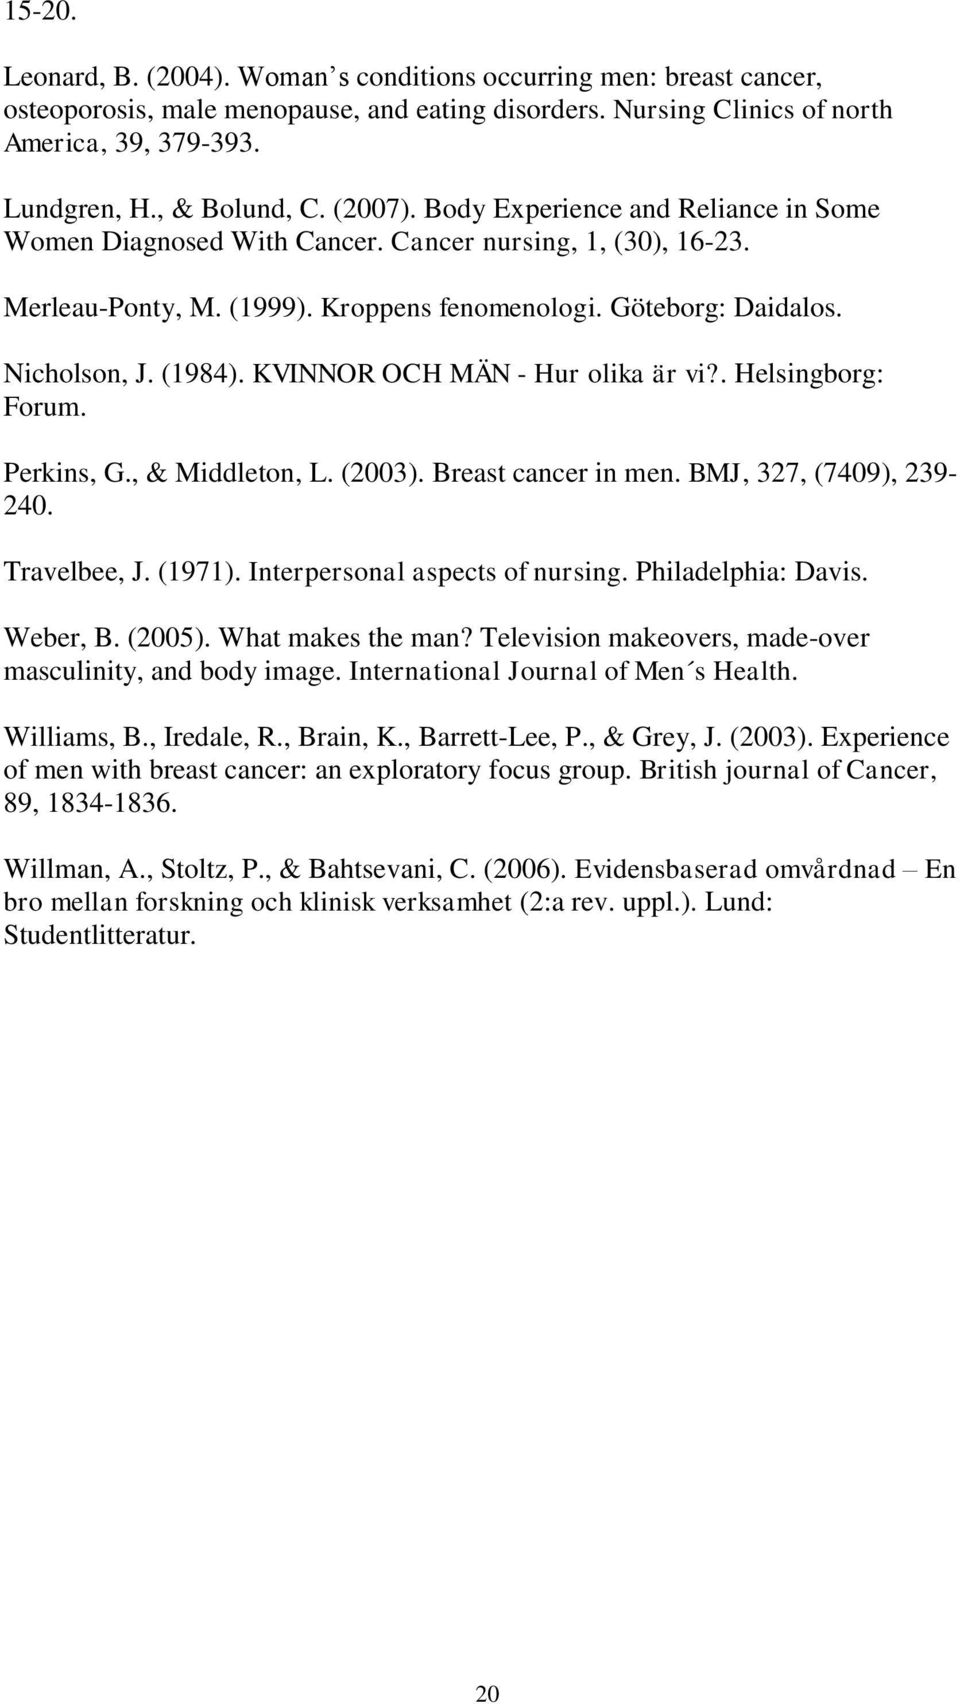 KVINNOR OCH MÄN - Hur olika är vi?. Helsingborg: Forum. Perkins, G., & Middleton, L. (23). Breast cancer in men. BMJ, 327, (749), 239-24. Travelbee, J. (1971). Interpersonal aspects of nursing.